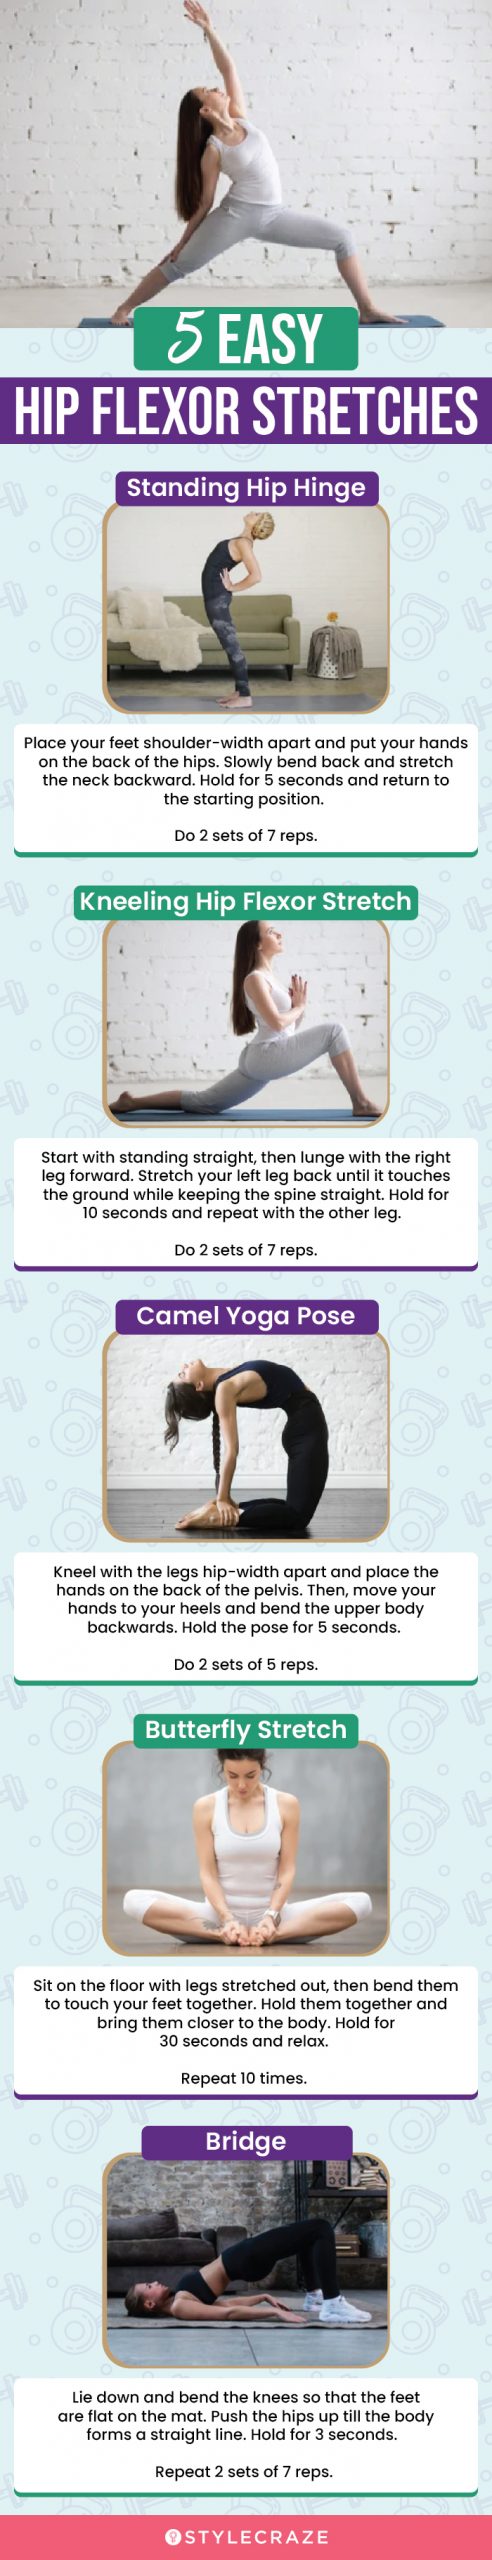 5 easy hip flexor stretches (infographic)